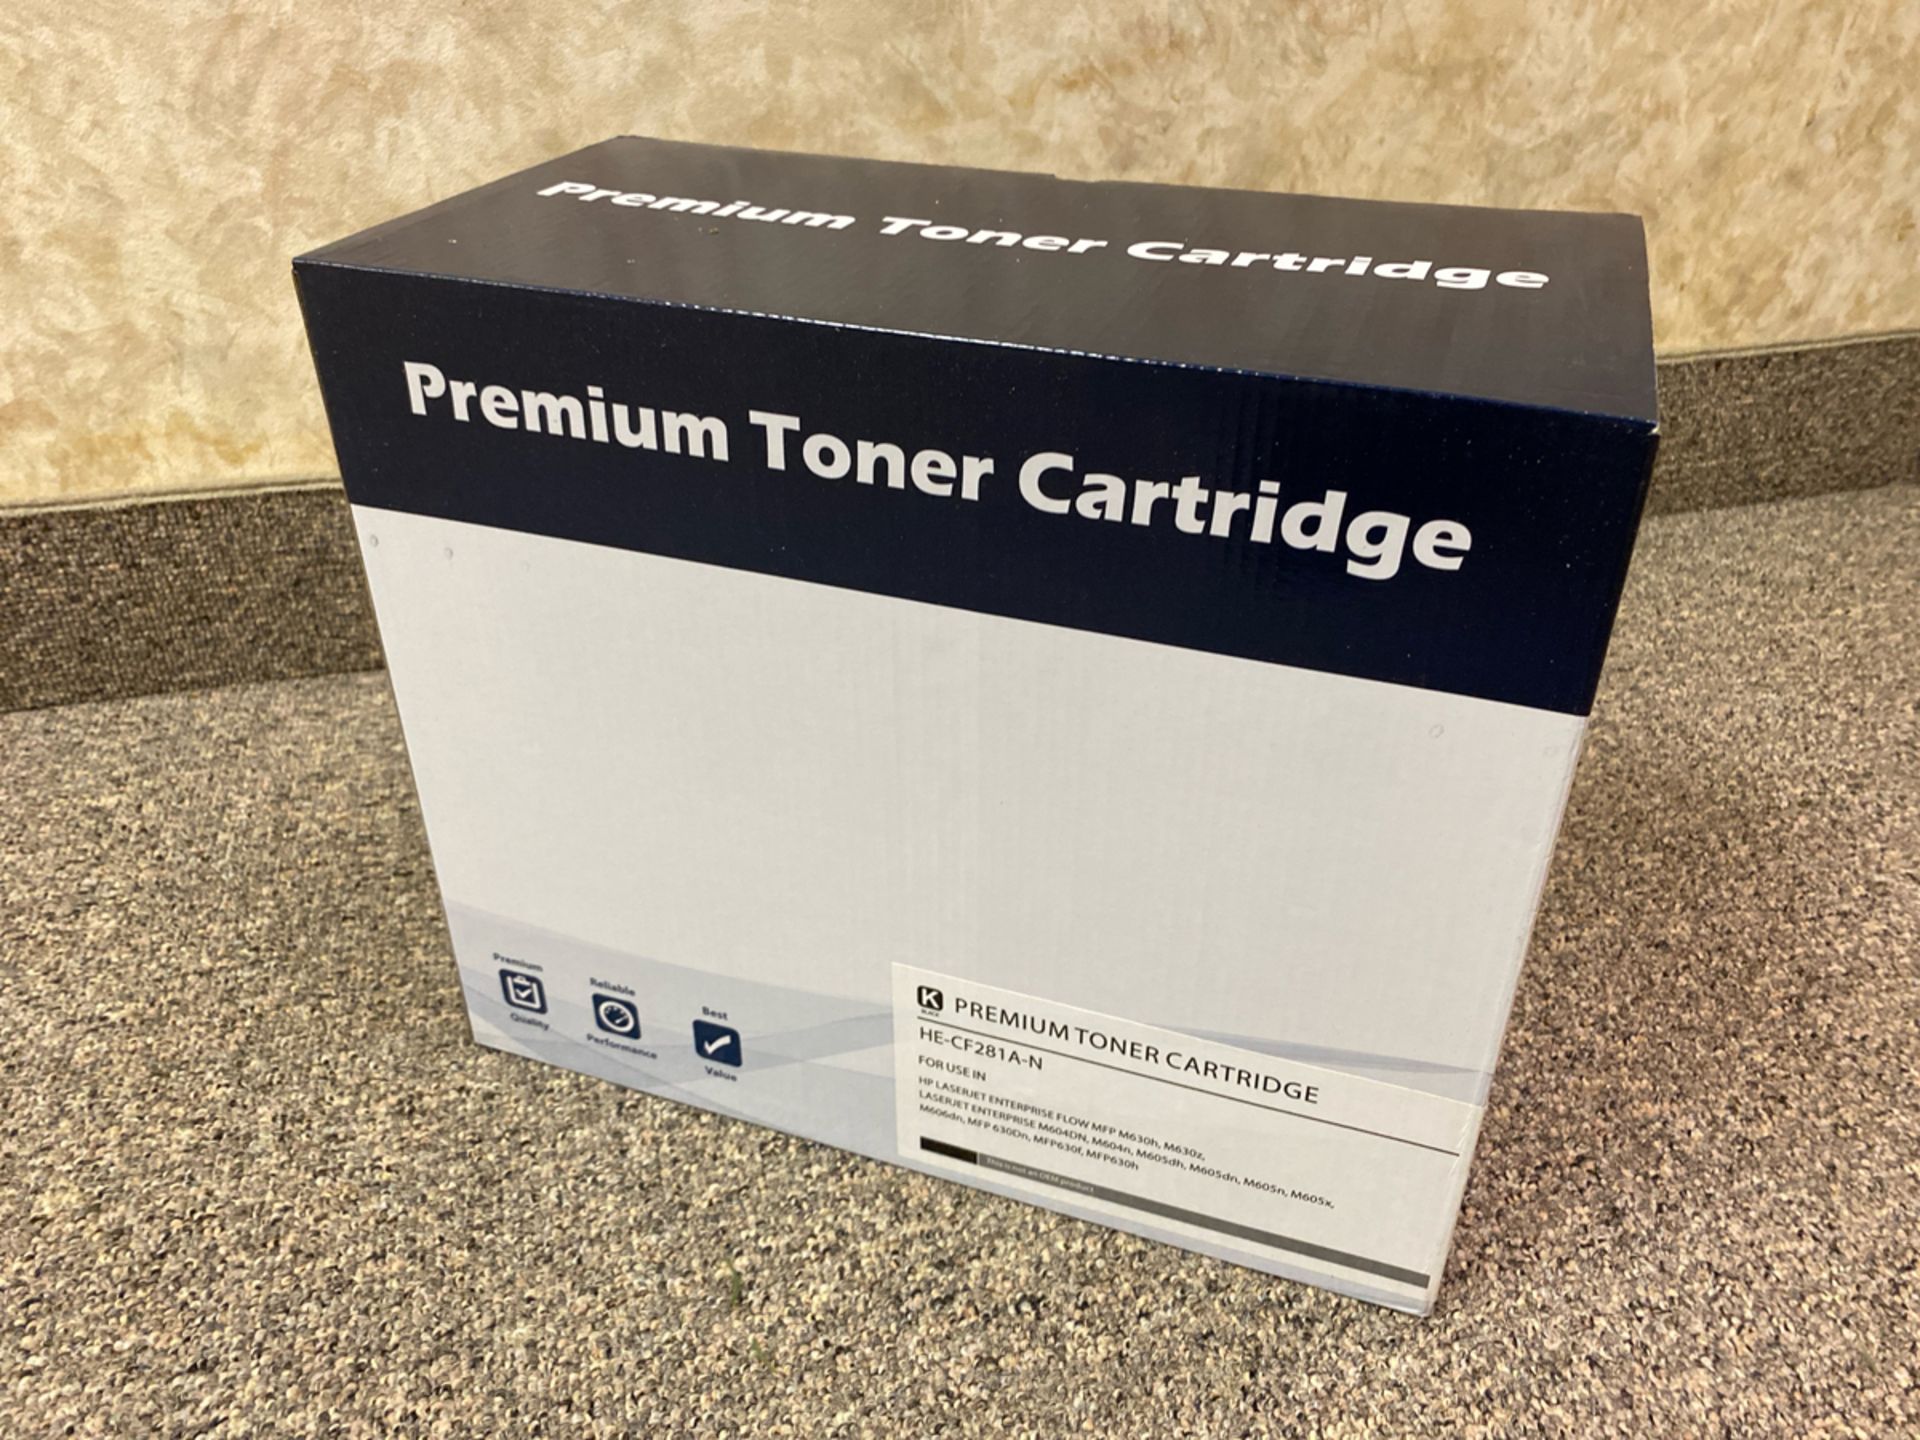 Premium Toner Cartridge HE-CF281A-N Black Toner Cartridge